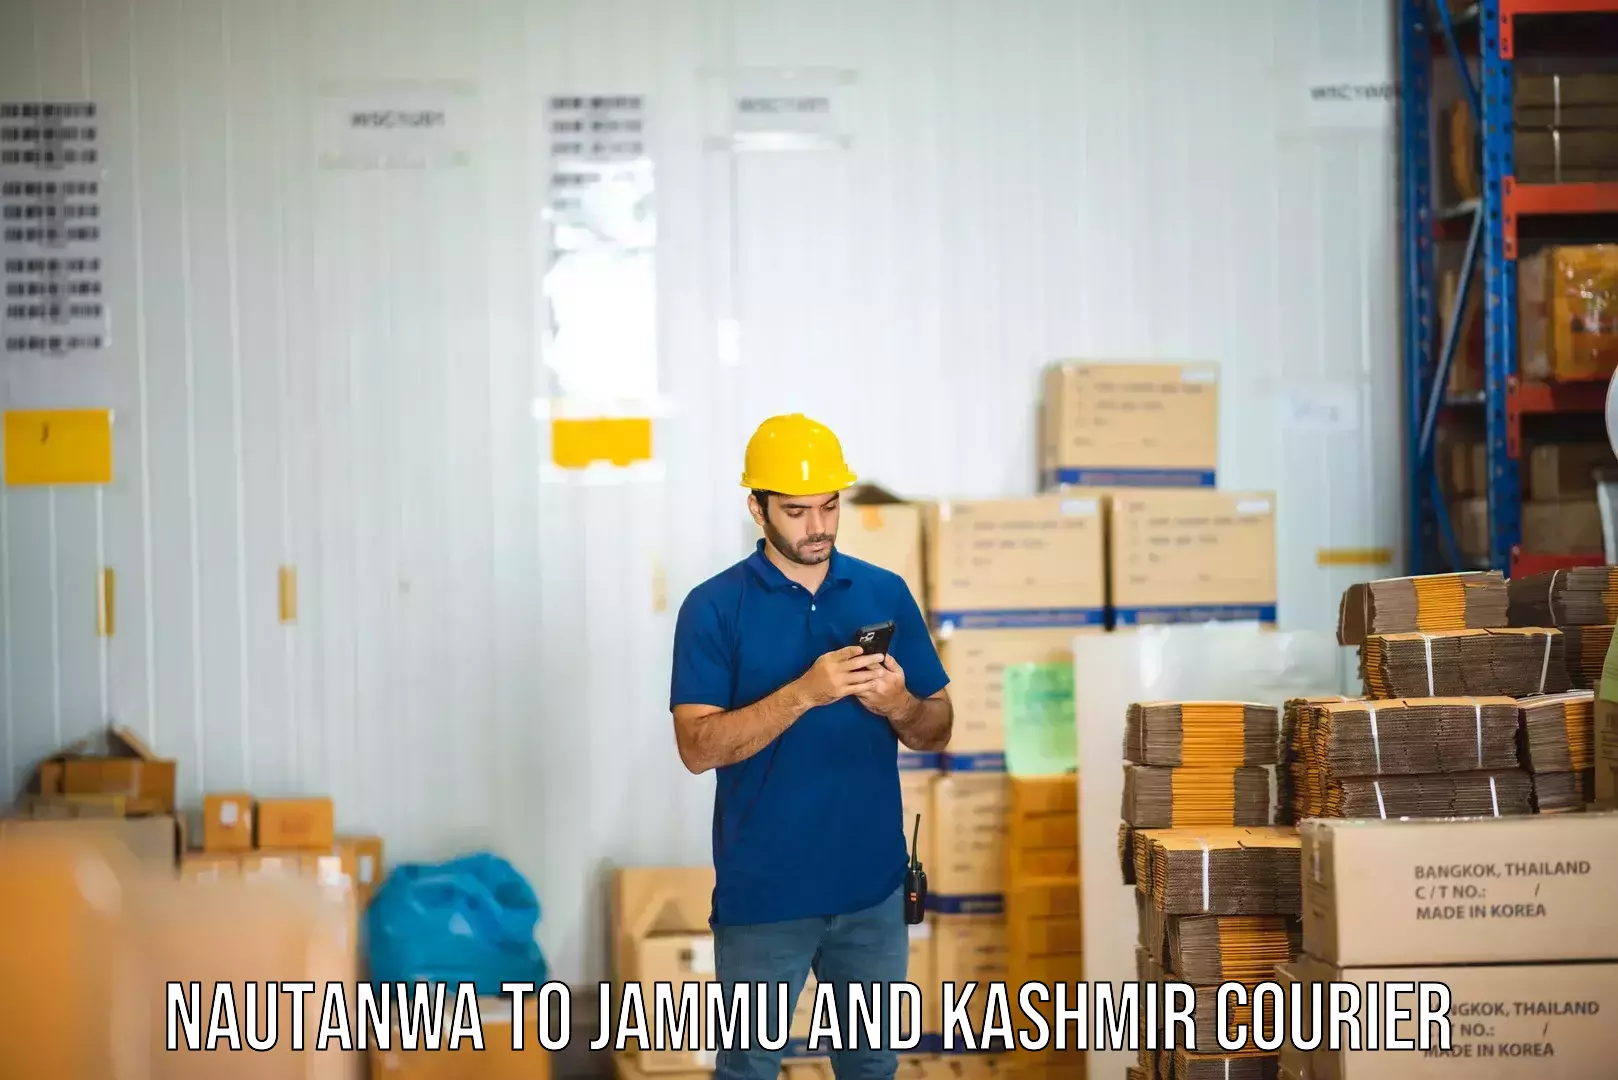 Express logistics providers Nautanwa to Jammu and Kashmir